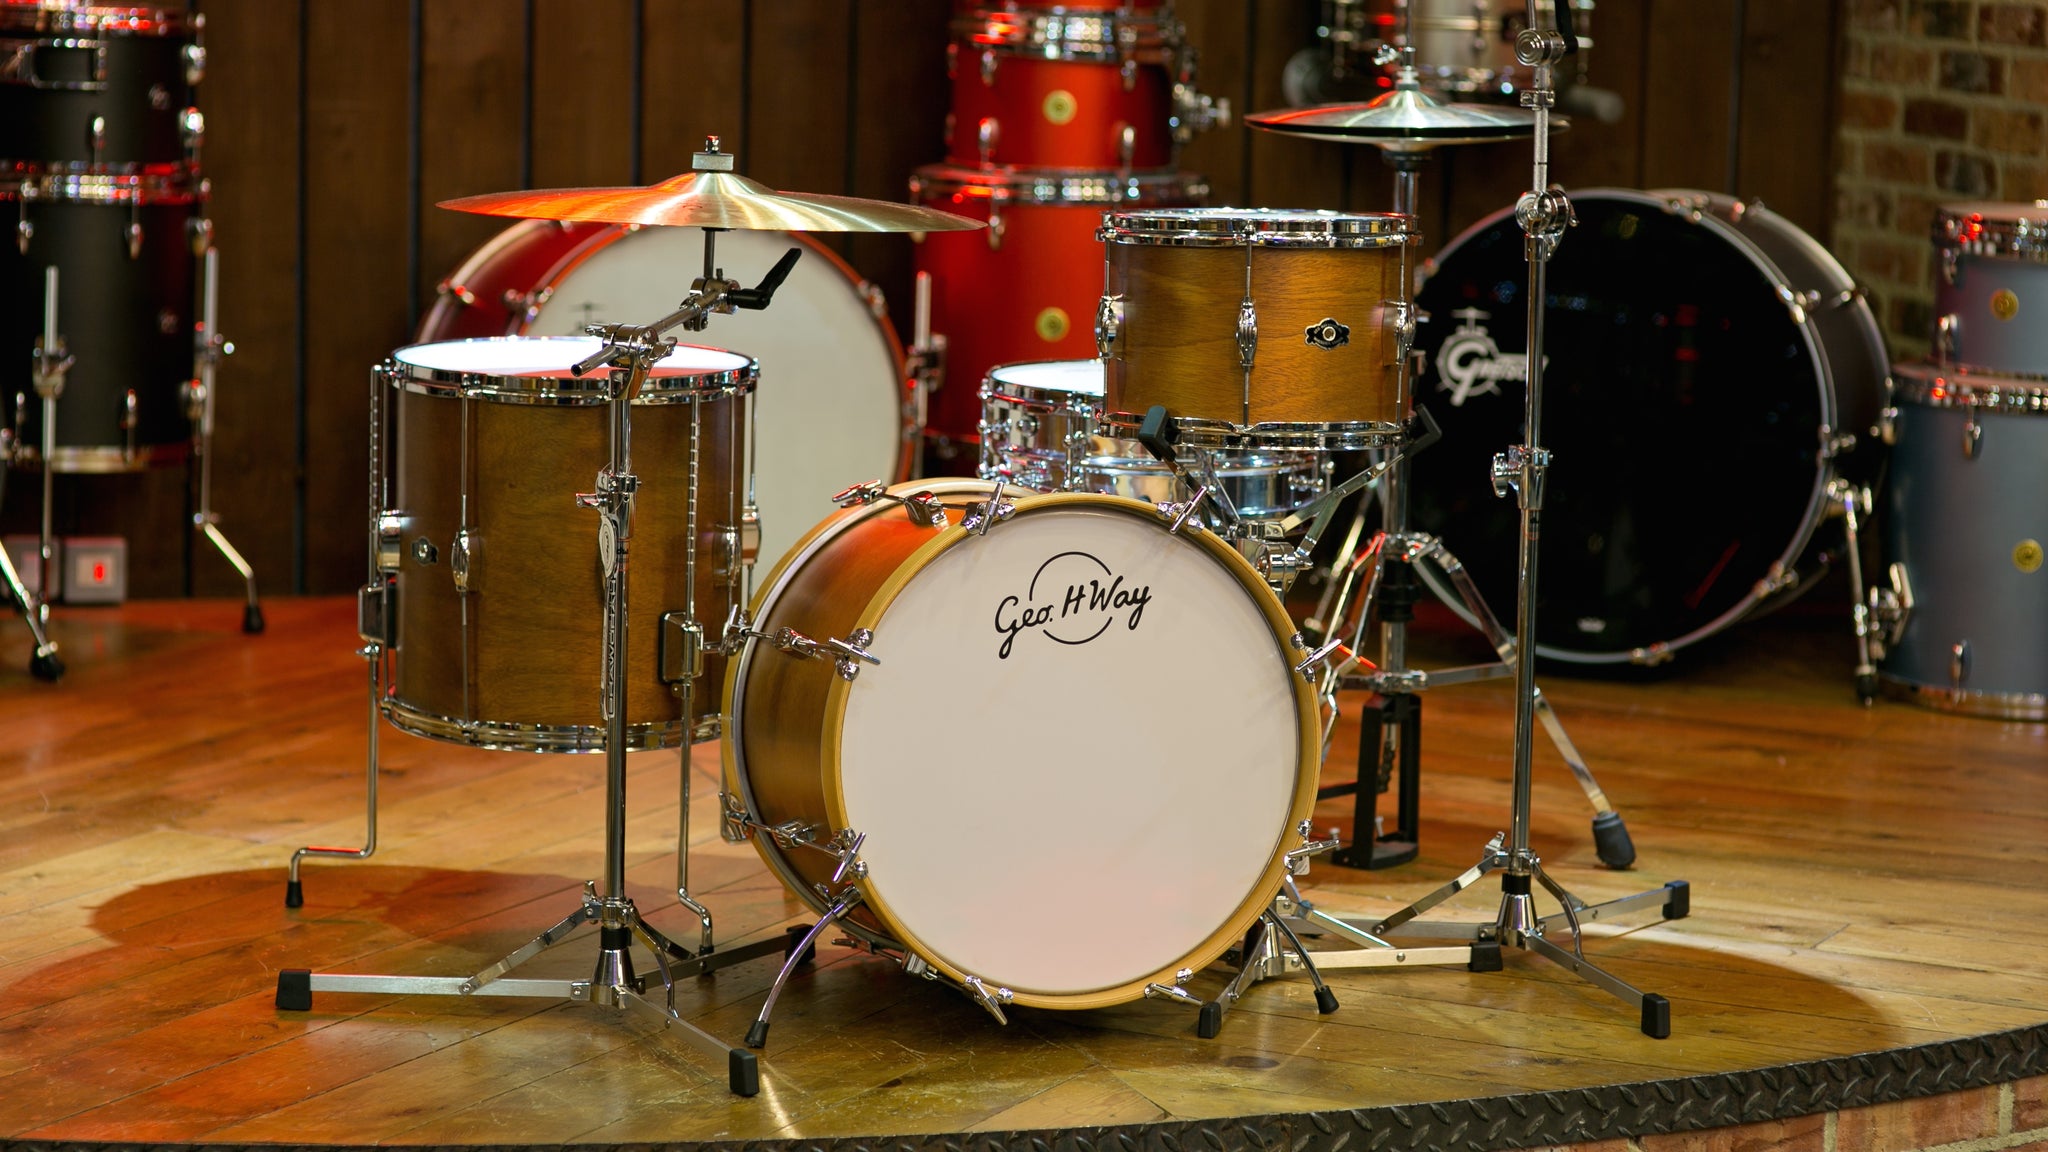 Drum kit by George Way